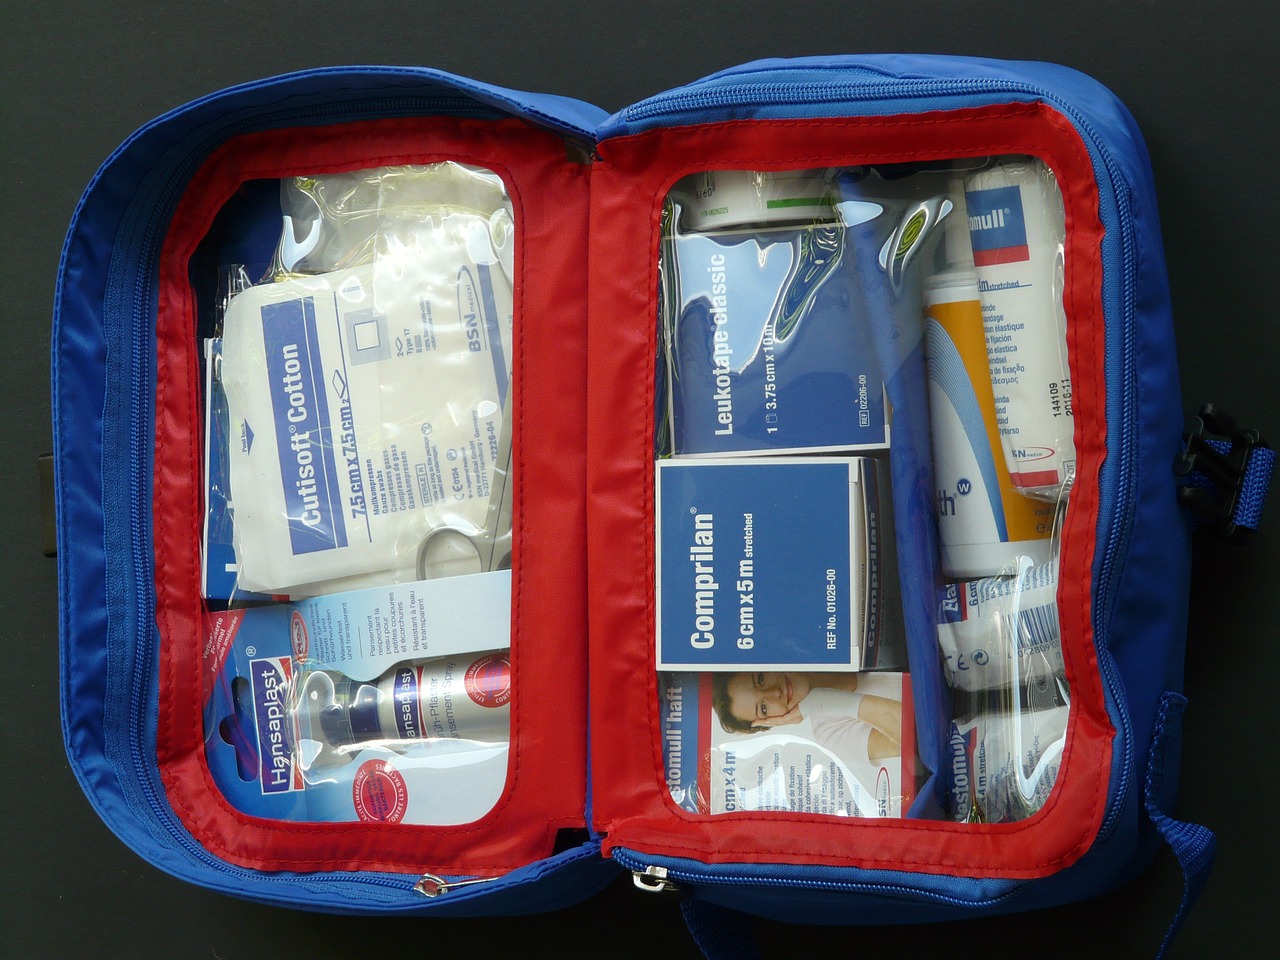 Les recommandations de la Pharmacie Rolland avec cette trousse à pharmacie  de voyage prêt à emporter dans le sac !